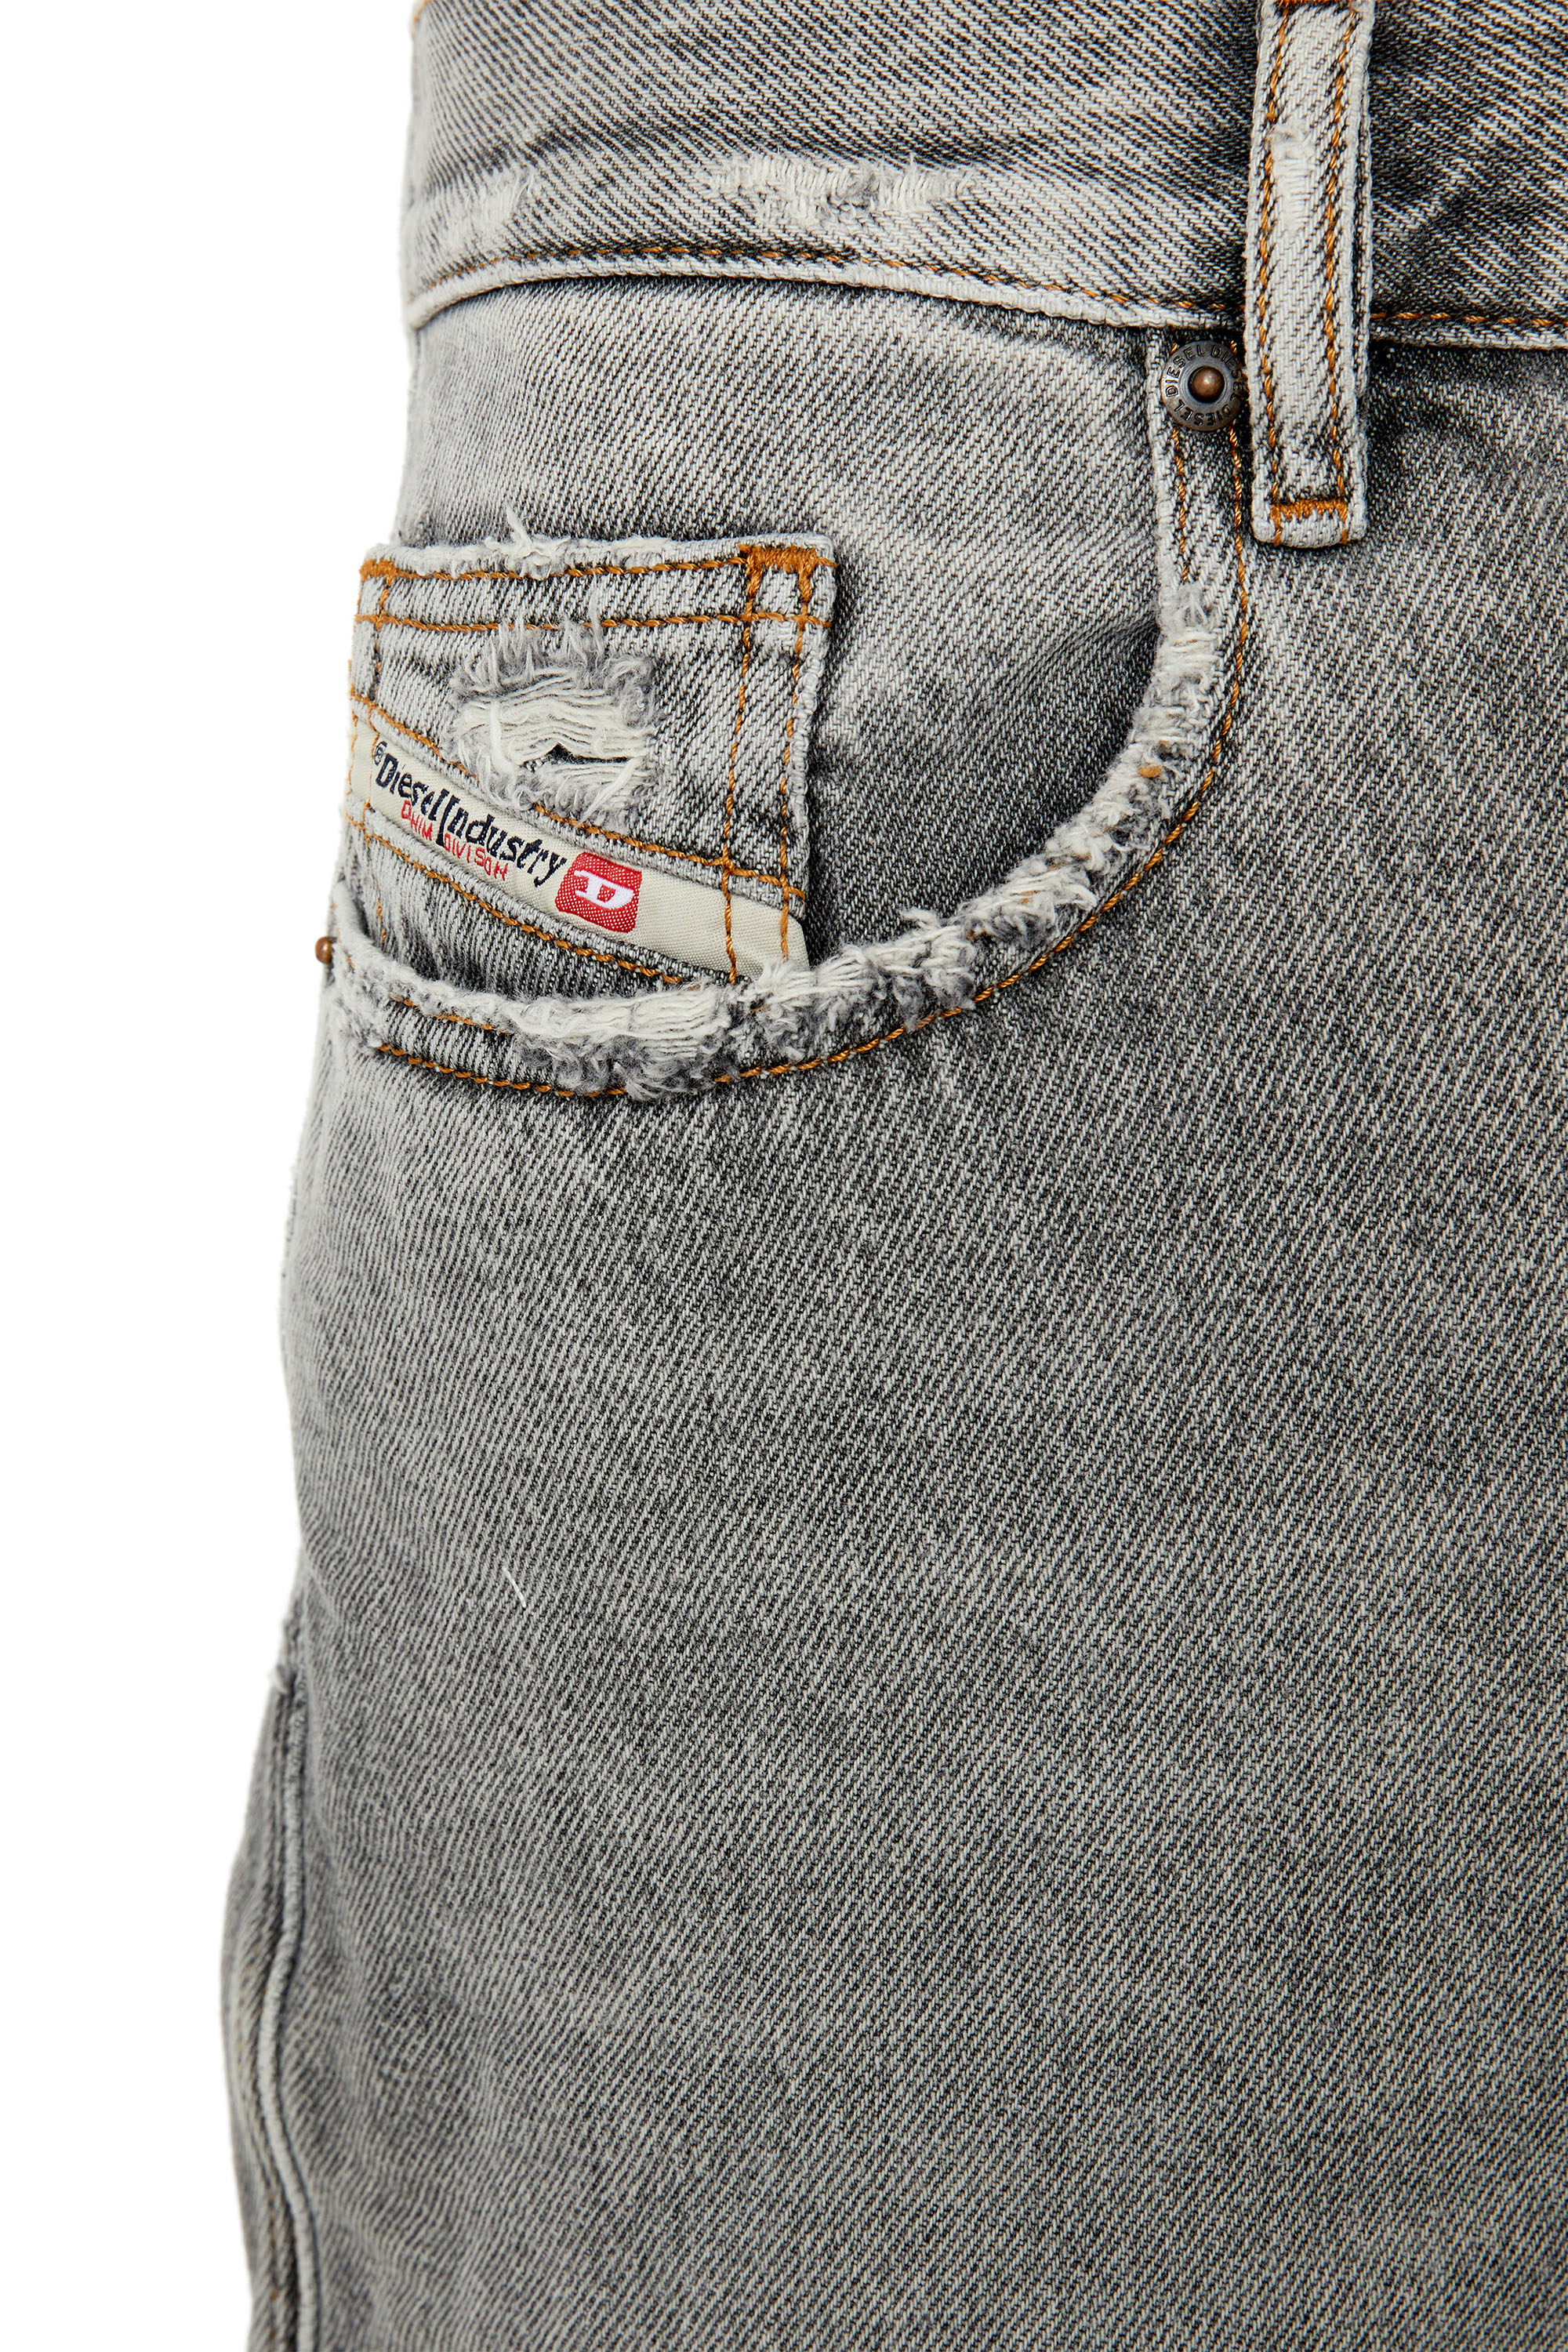 Diesel - Straight Jeans 2020 D-Viker E9B84,  - Image 4